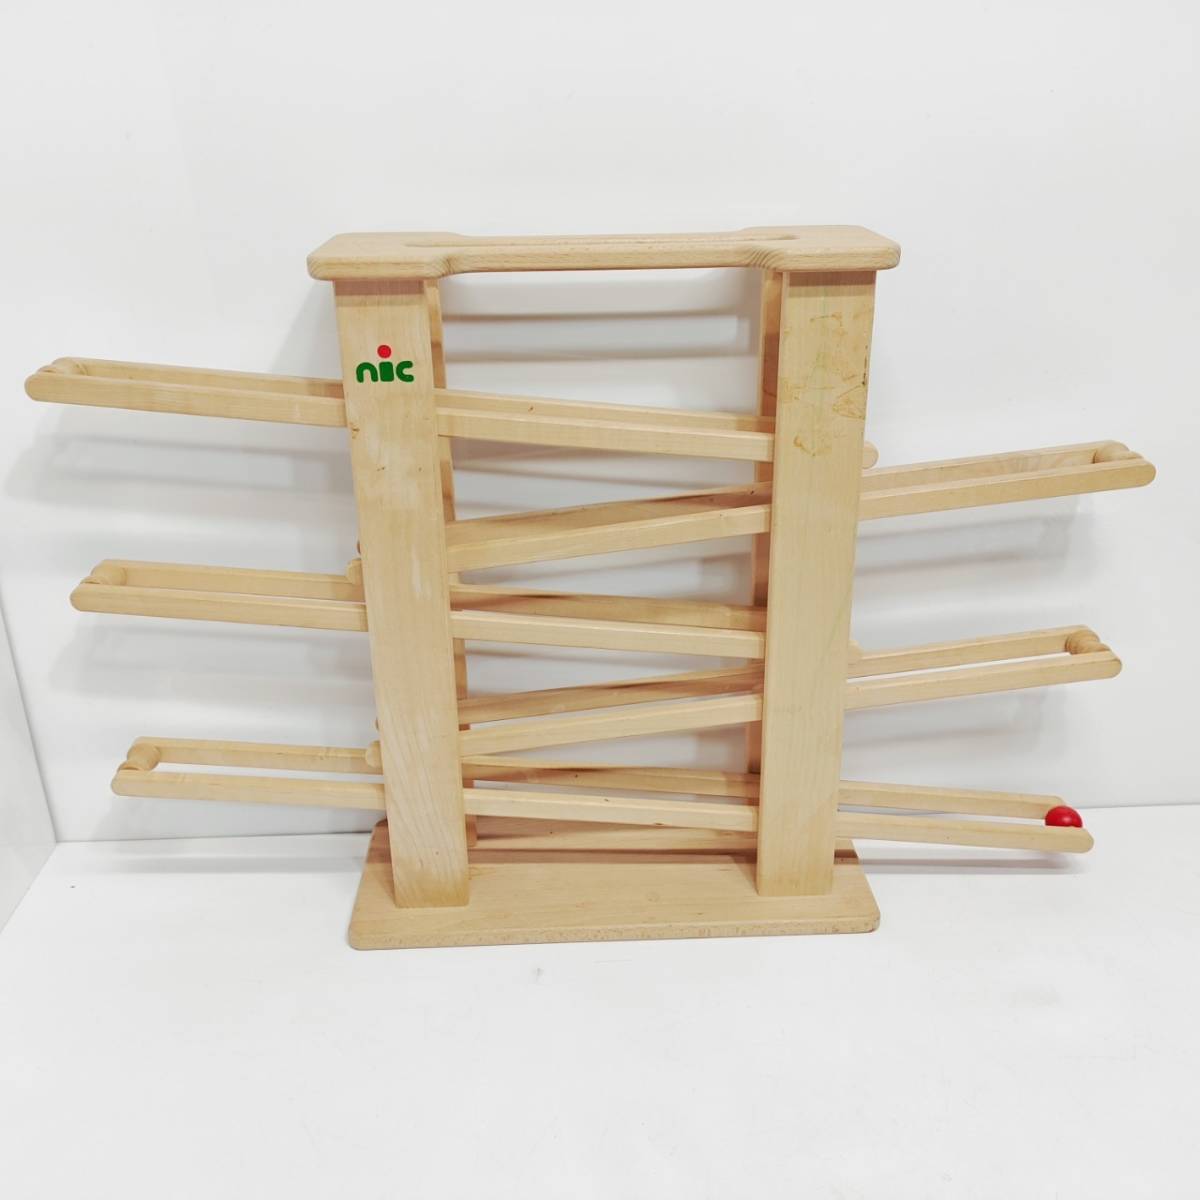 ●ニック社 ニックスロープ 木製スロープトイ nic スロープトイ 木のおもちゃ シンプル こども 遊び 知育 ピタゴラスイッチB438_画像2